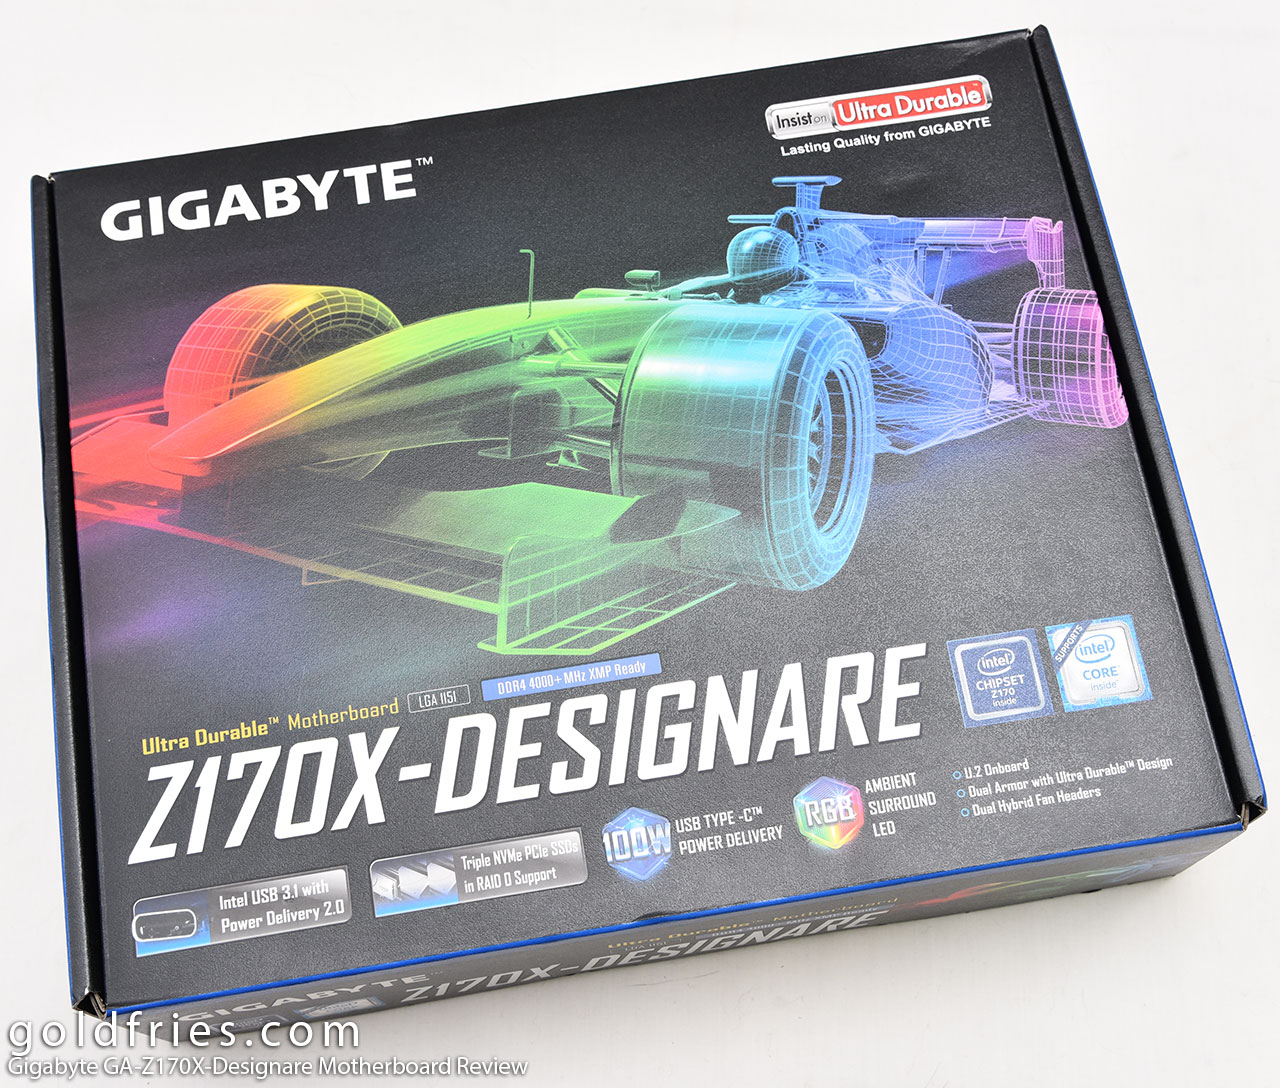 Gigabyte GA-Z170X-Designare Motherboard Review